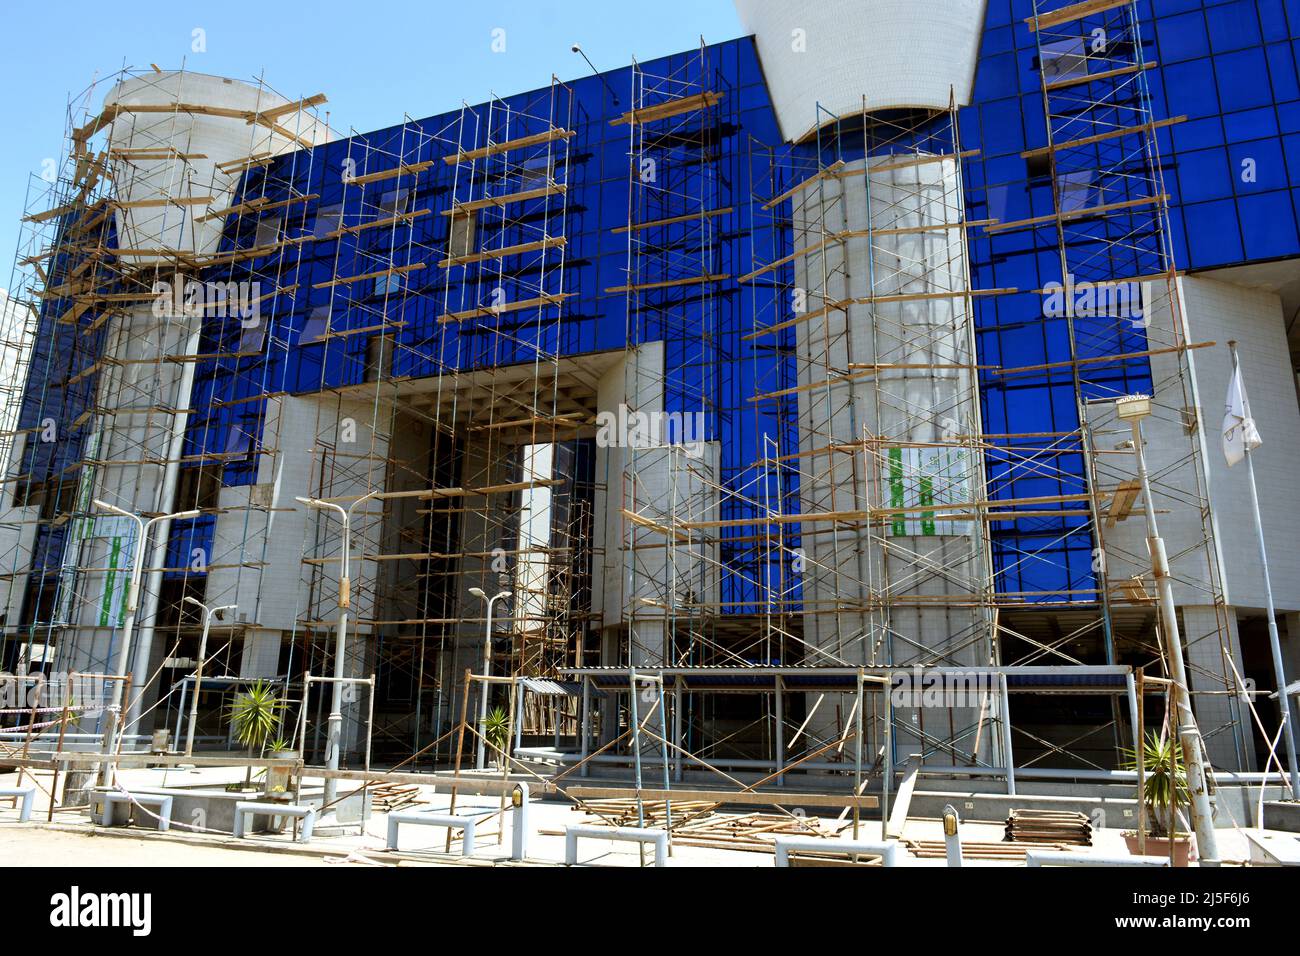 Kairo, Ägypten, Juli 1 2021: Ein blaues Gebäude Renovierung und Installation von Metallverkleidung und Glas allover die äußere Struktur des Gebäudes mit Stockfoto